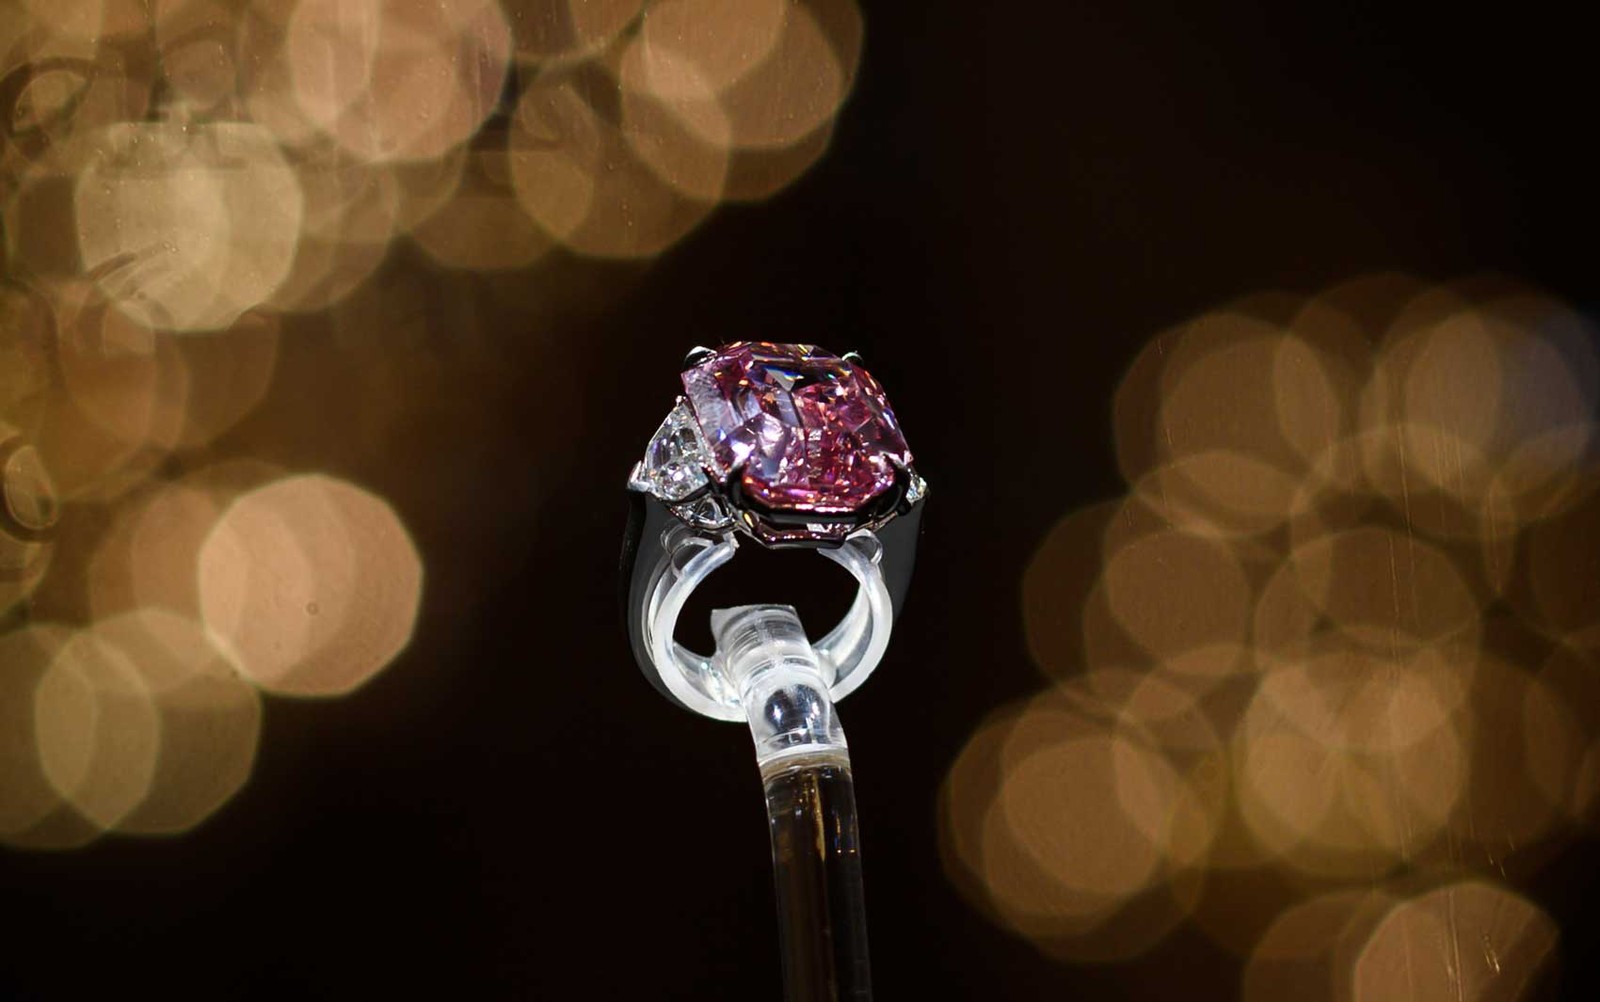 Diamante raro é vendido em leilão na Suíça. Aos detalhes! 